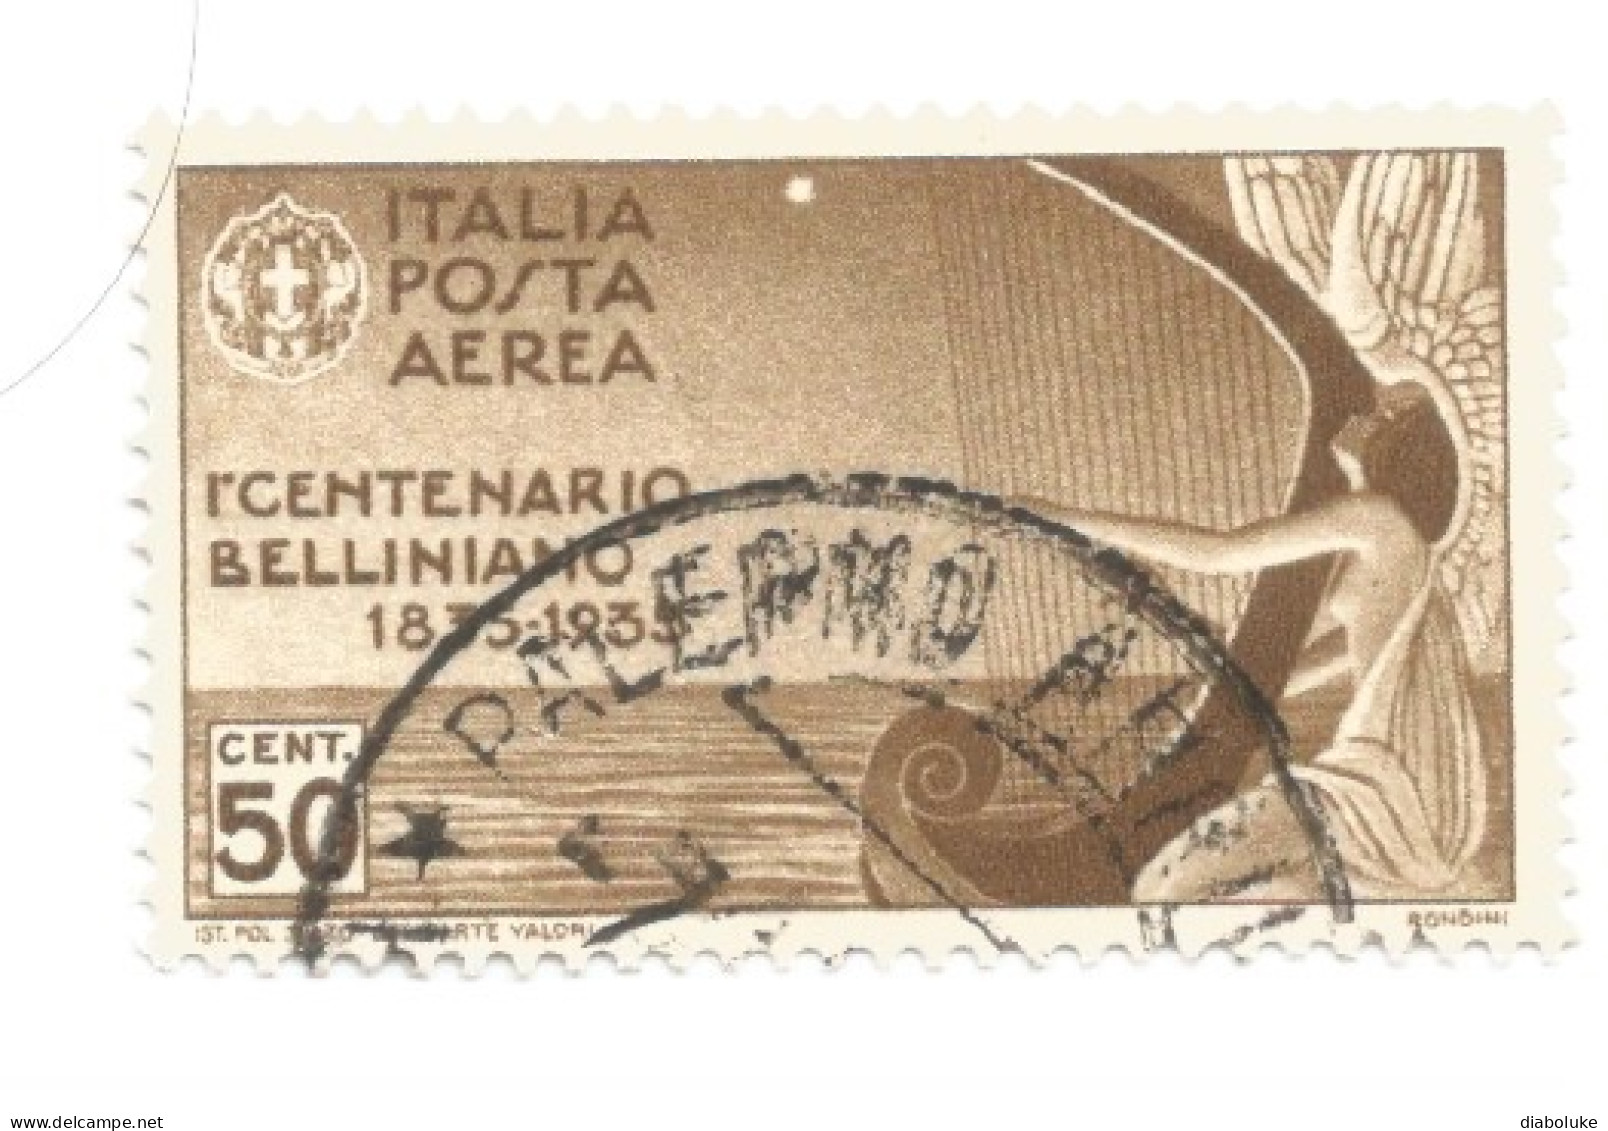 (REGNO D'ITALIA) 1933, MORTE DI VINCENZO BELLINI - Serie Di 5 Francobolli Usati, Annulli Da Periziare - Luftpost